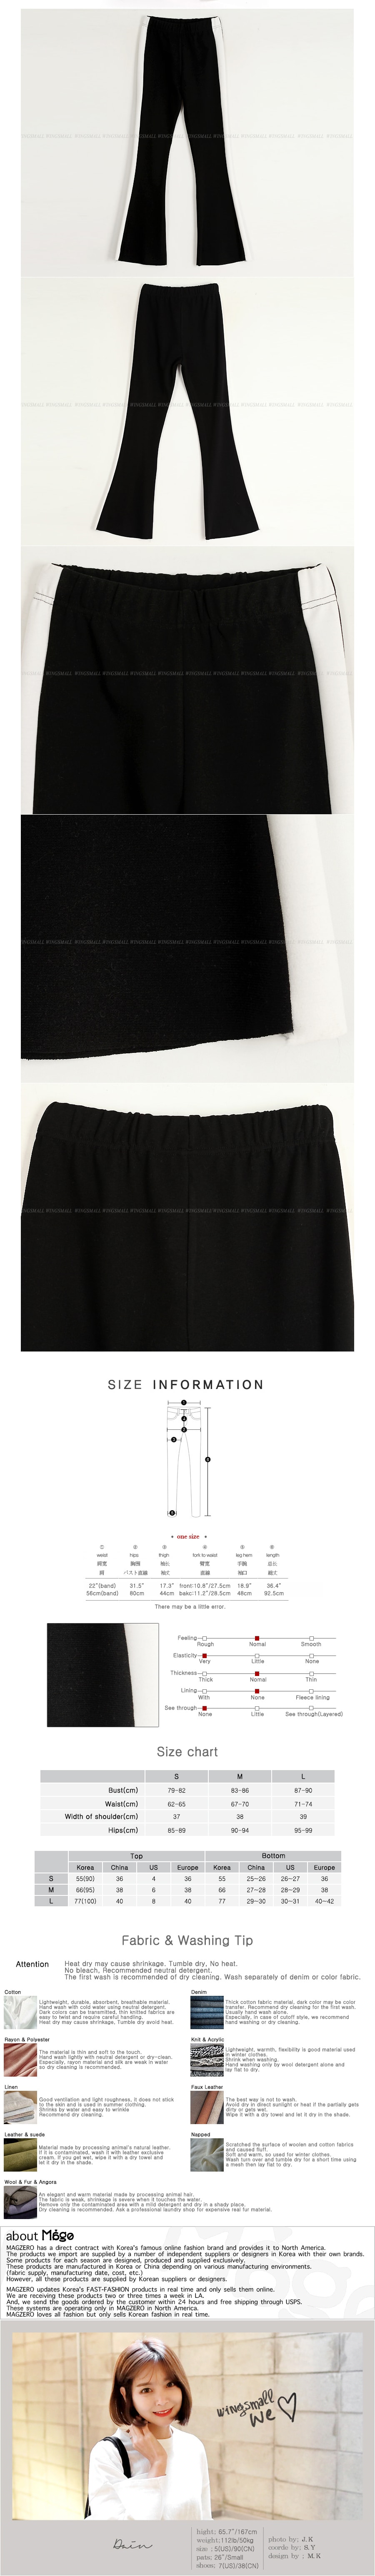 MAGZERO [限量销售] 边条纹紧身喇叭九分裤 #黑色 均码(S-M)